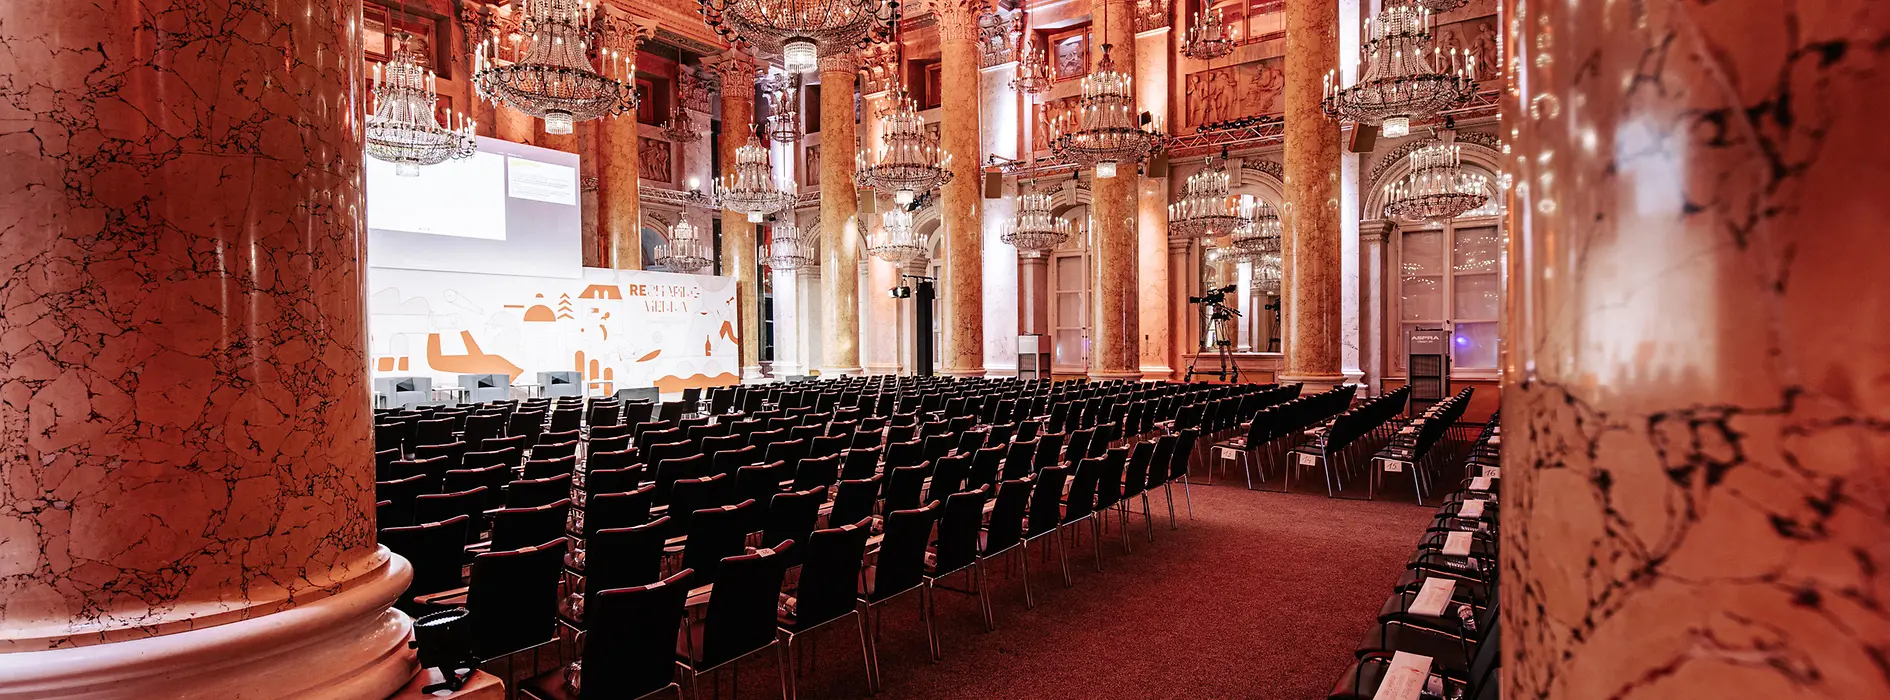 Zeremoniensaal der Hofburg Vienna - Corona-konforme Veranstaltung